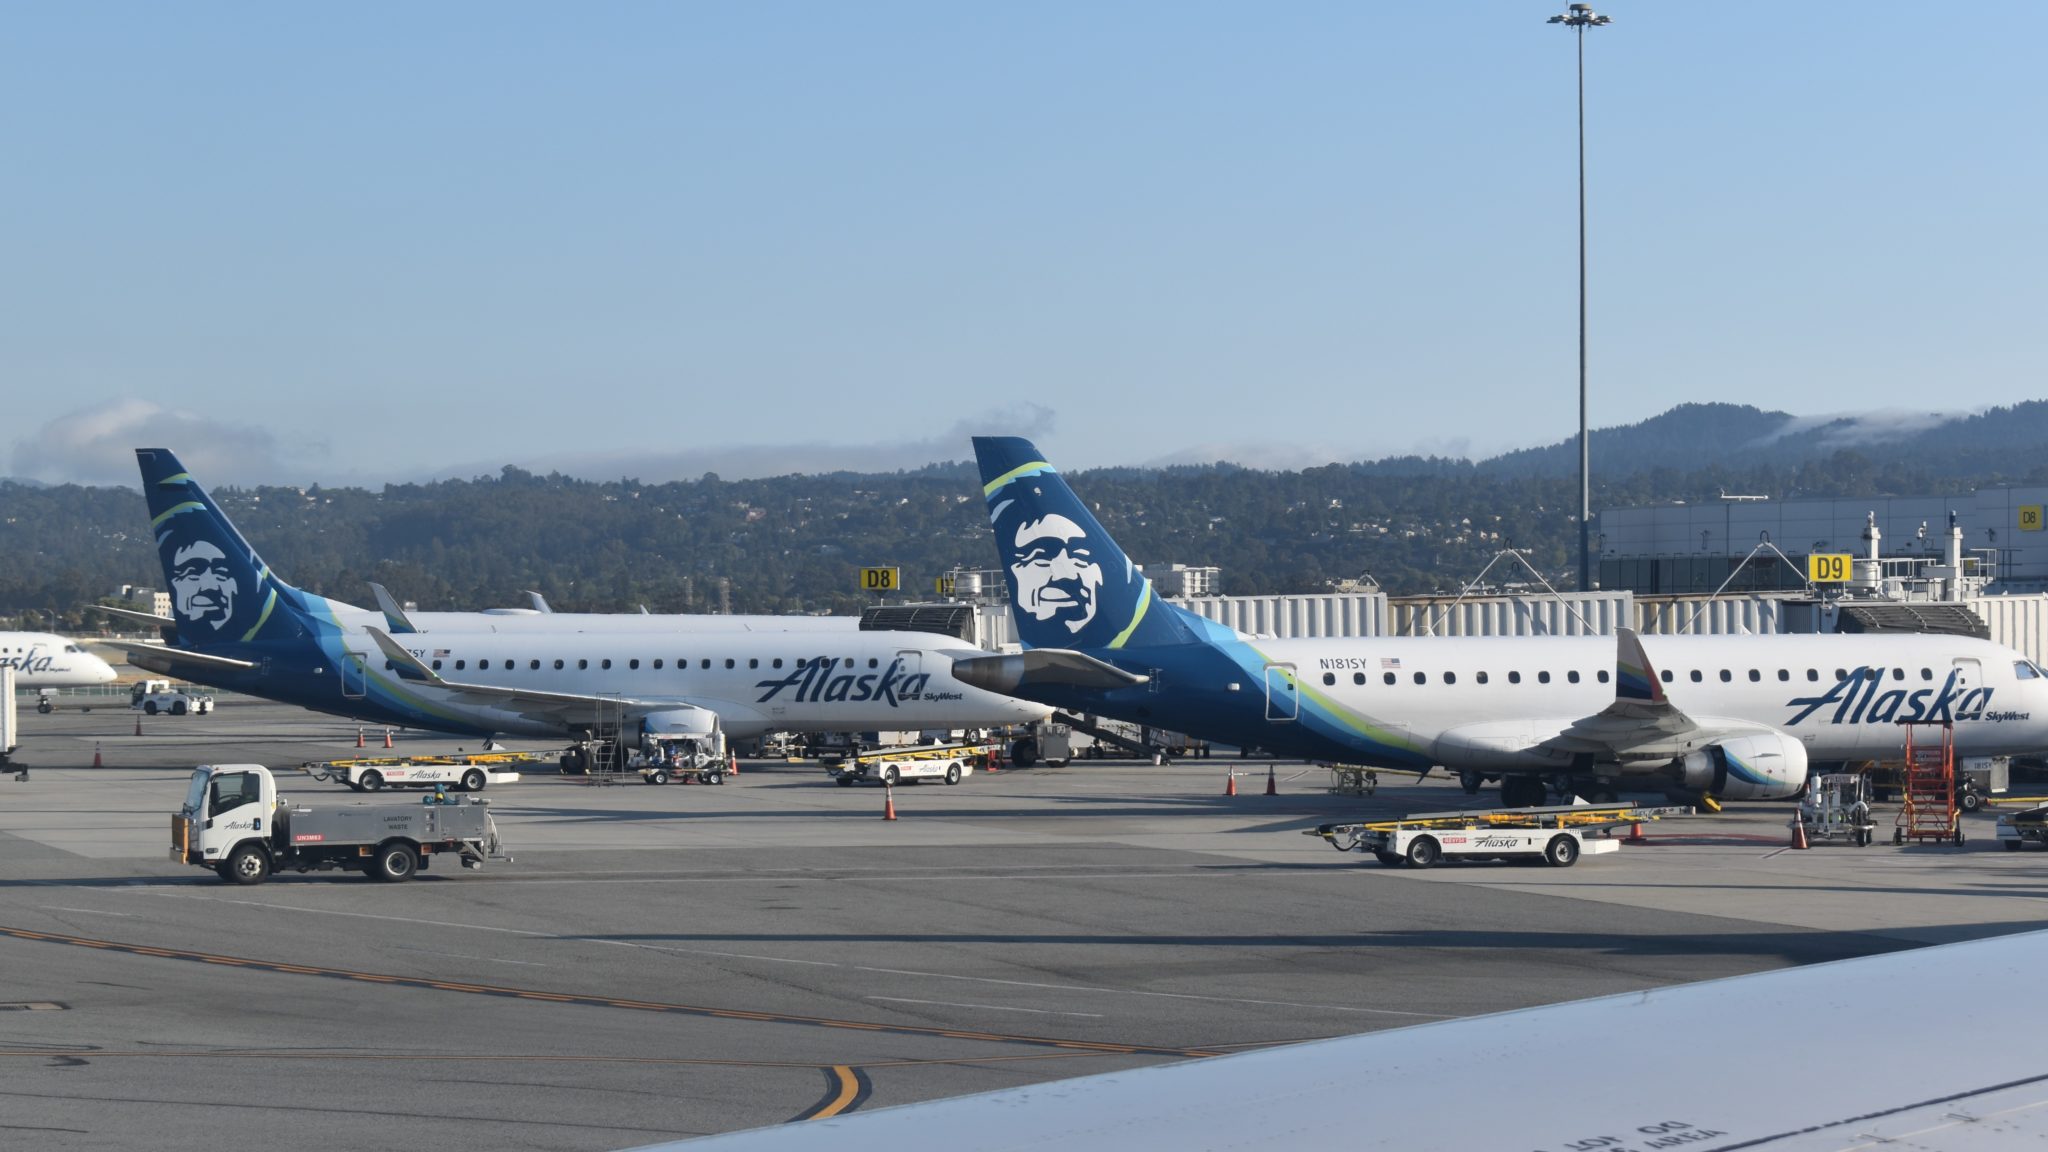 Alaska Airlines BOGO Flights Offer Is Back For A Limited Time